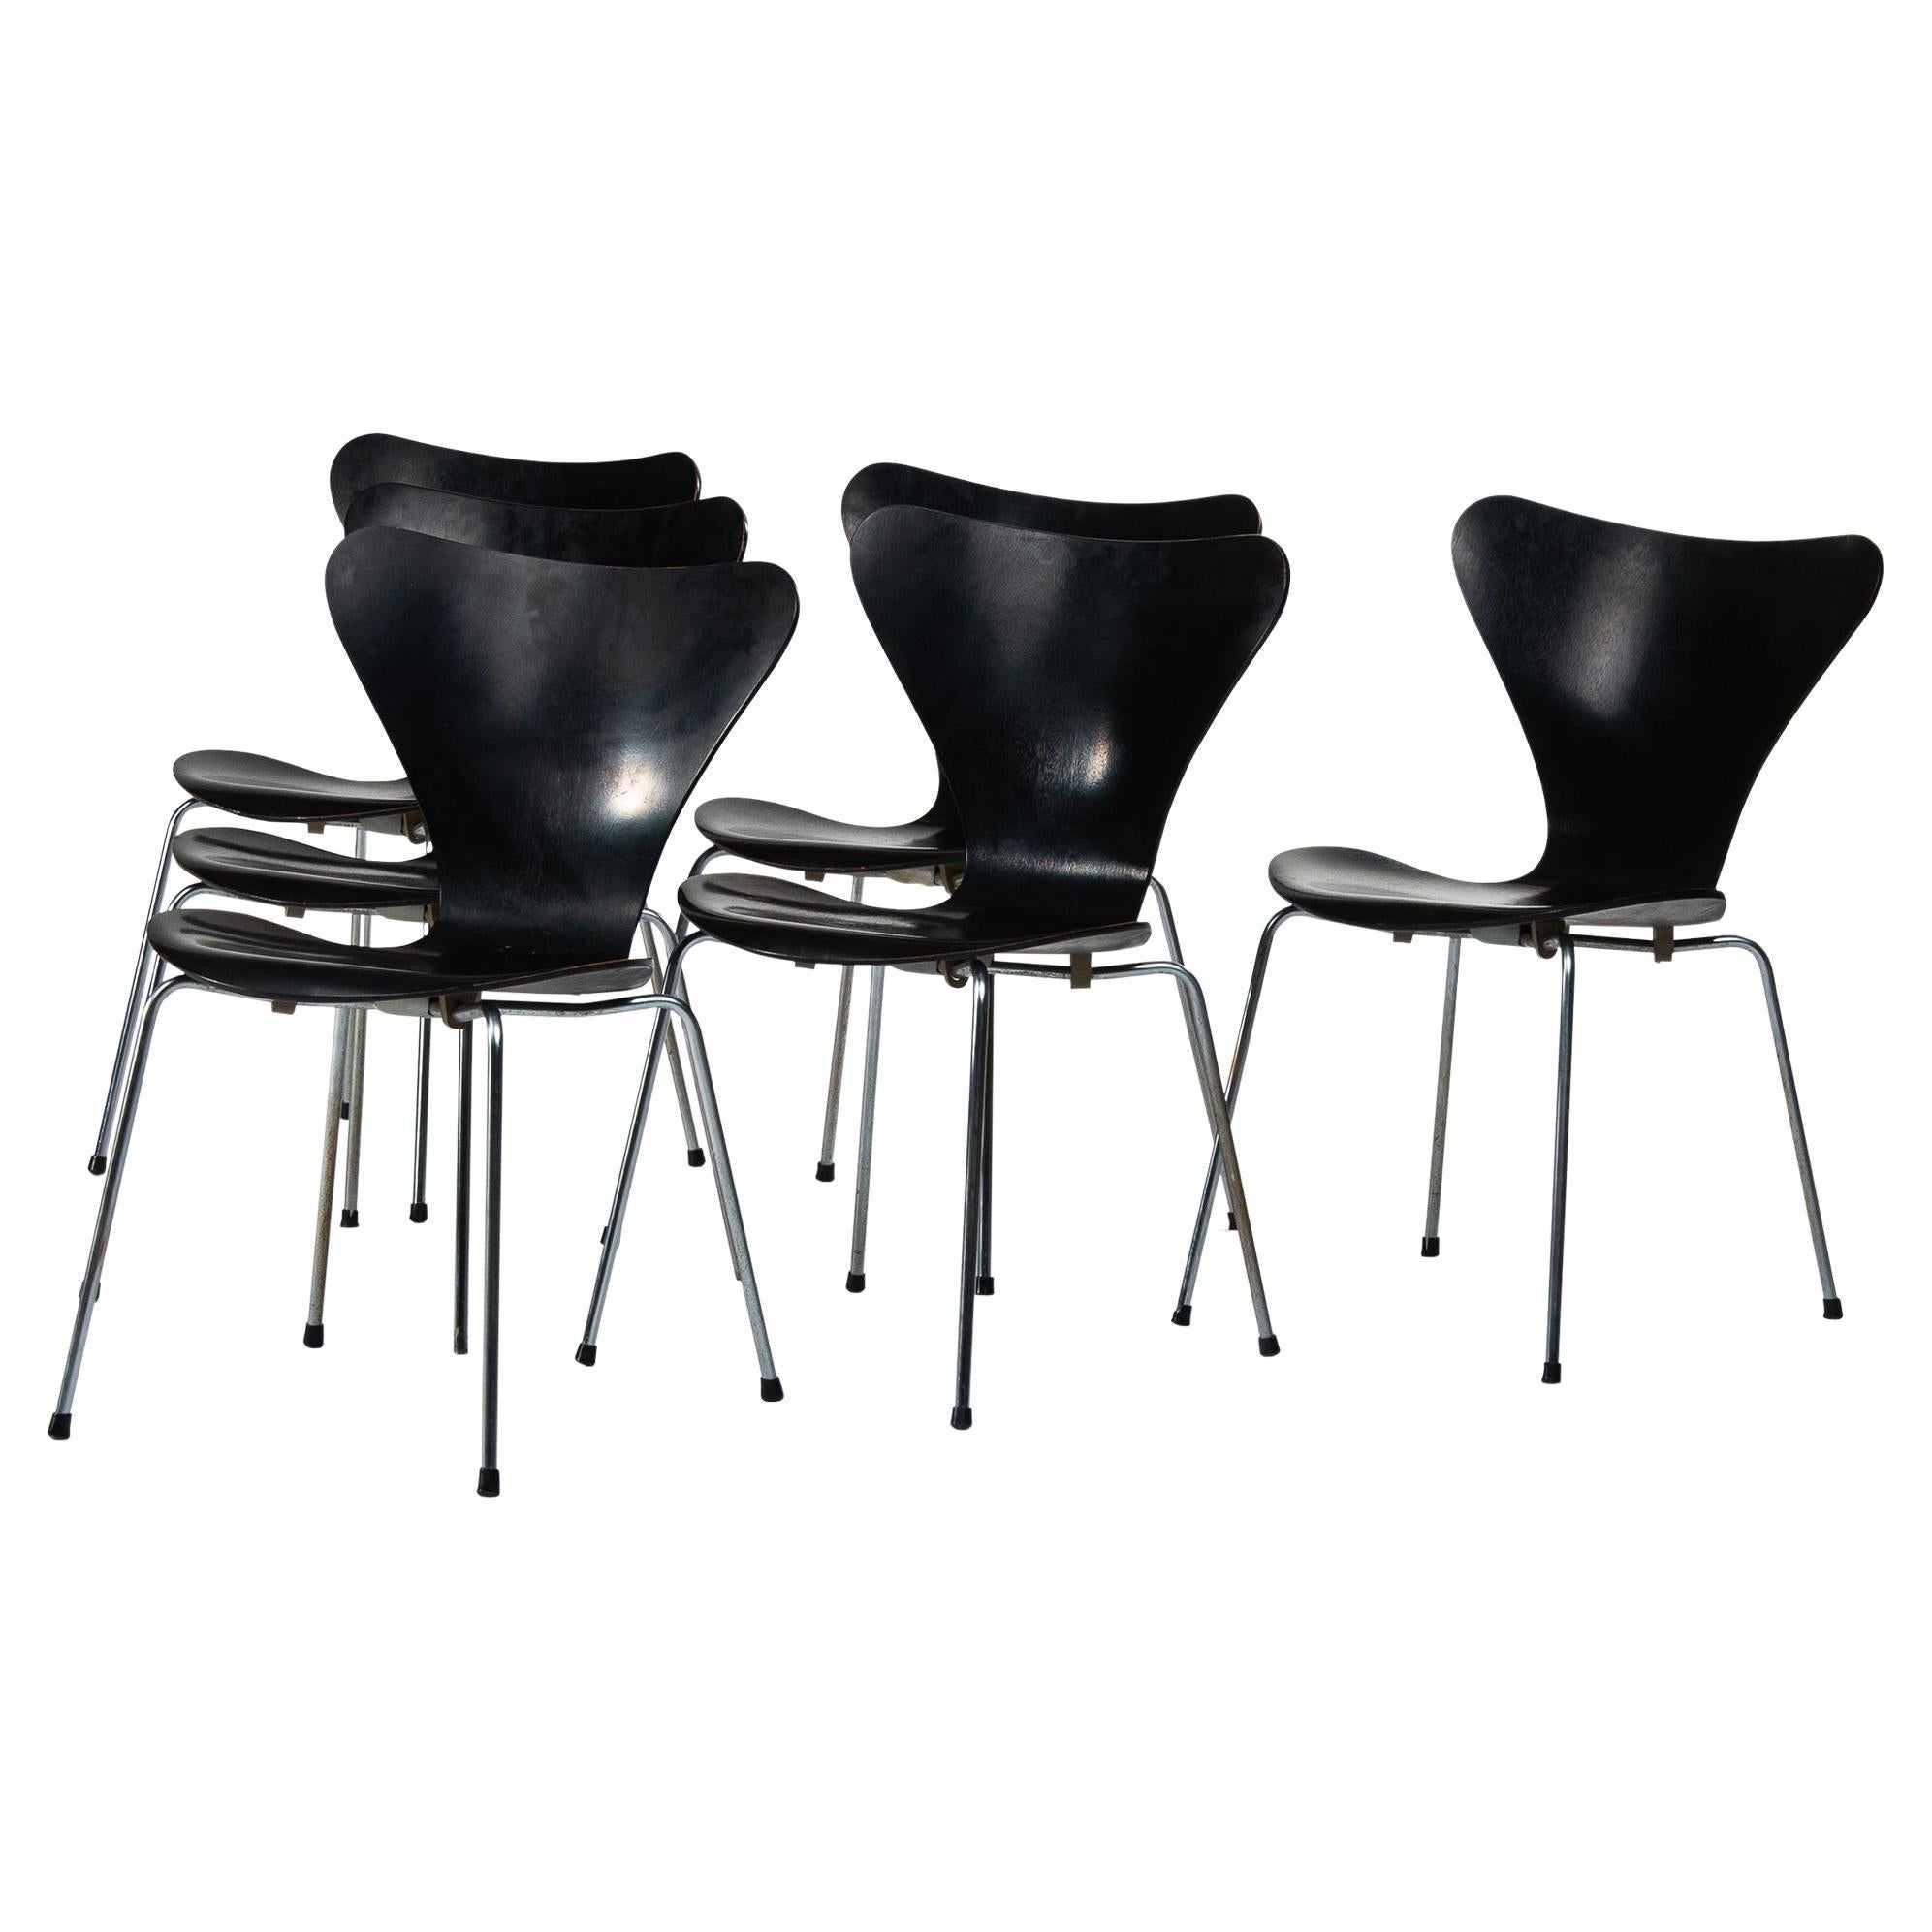 Six Black Arne Jacobsen Dining chairs Mod. 3107 for Fritz Hansen Denmark 1964 For Sale